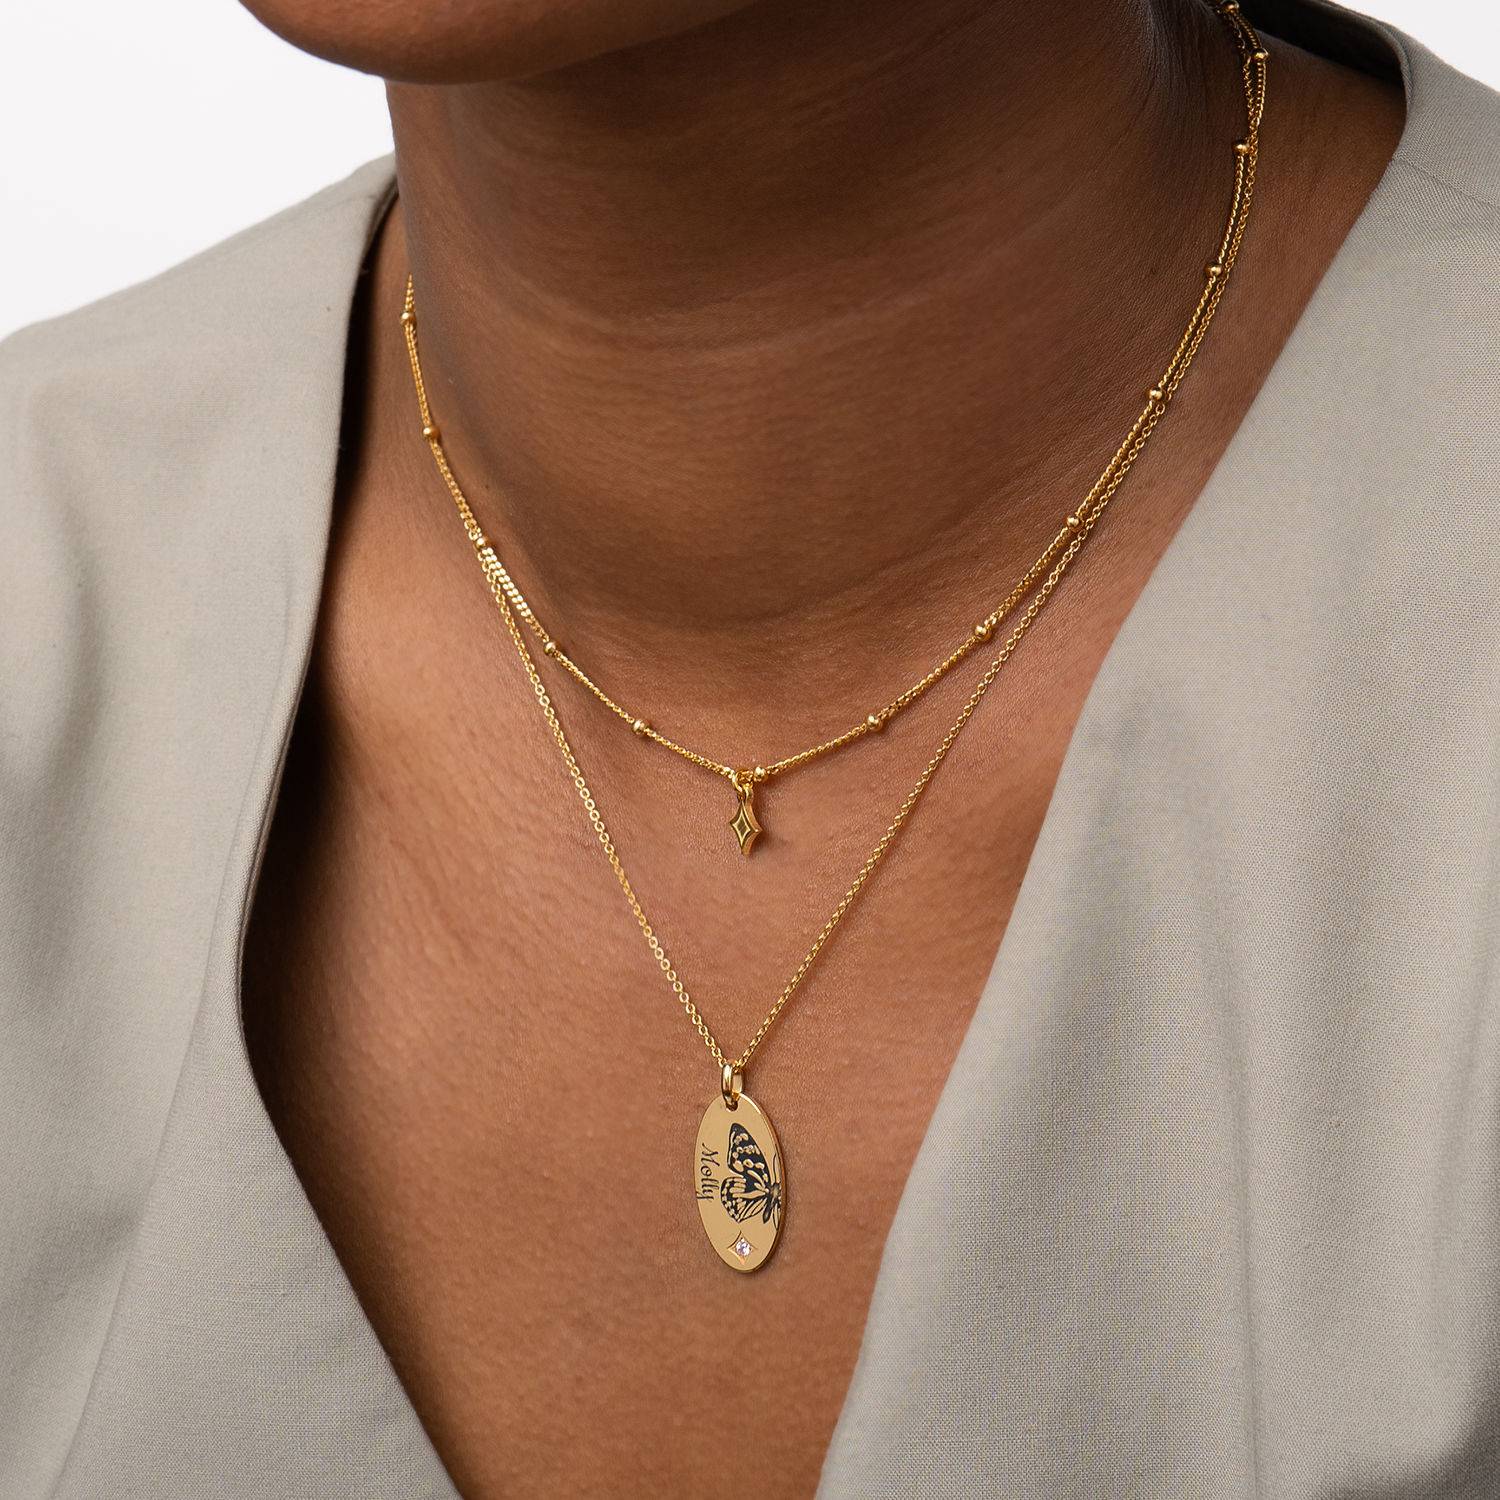 Halskette im Lagenlook mit Geburtsstein und Schmetterling - 750er Gold-Vermeil-4 Produktfoto